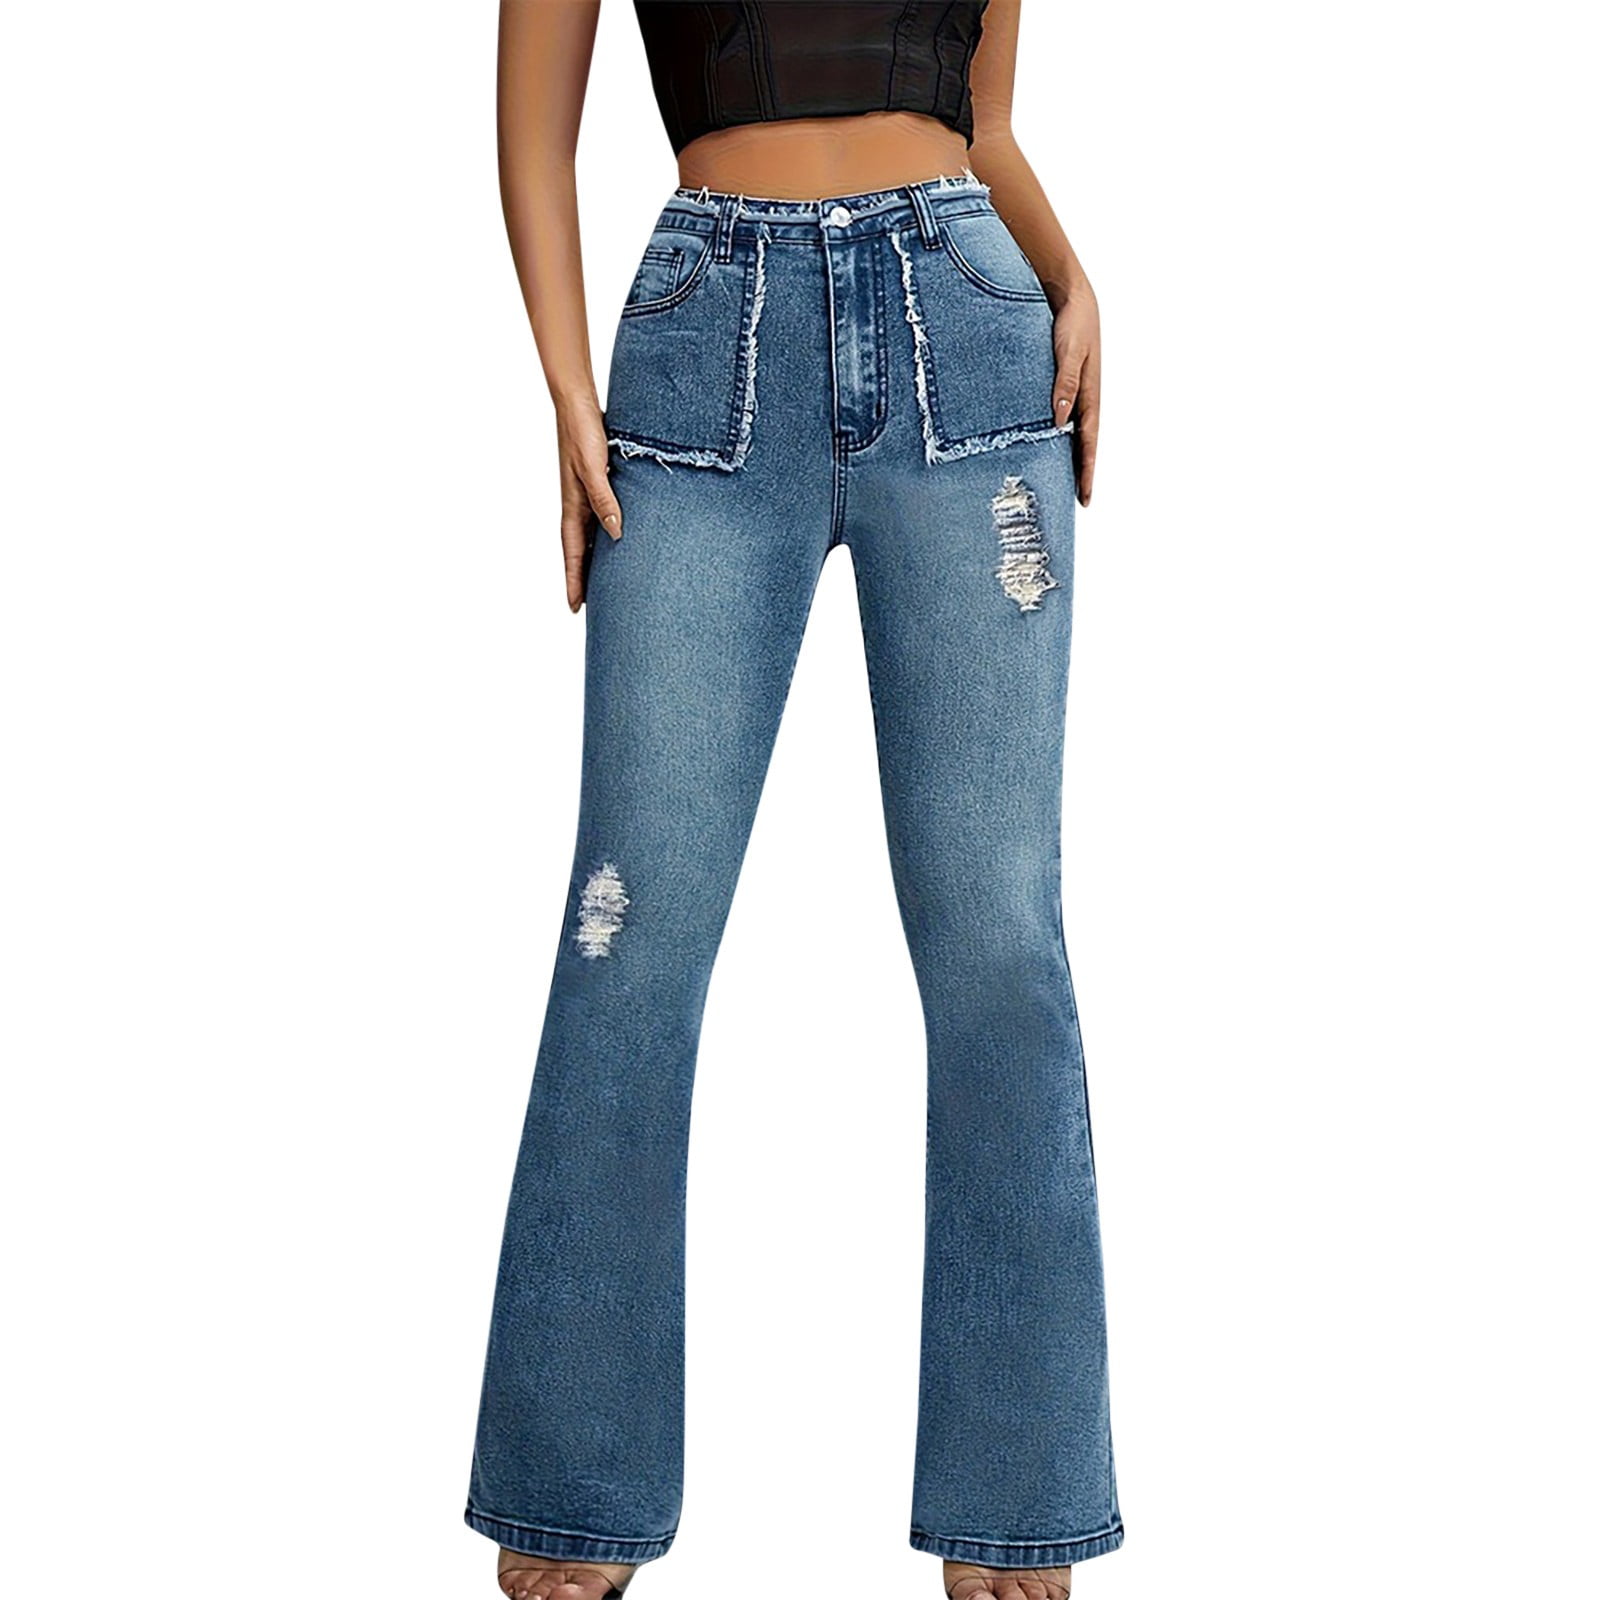 Bell Bottom Pants for Women Womens Jeans Boyfriend Jeans High Pro Wide ...